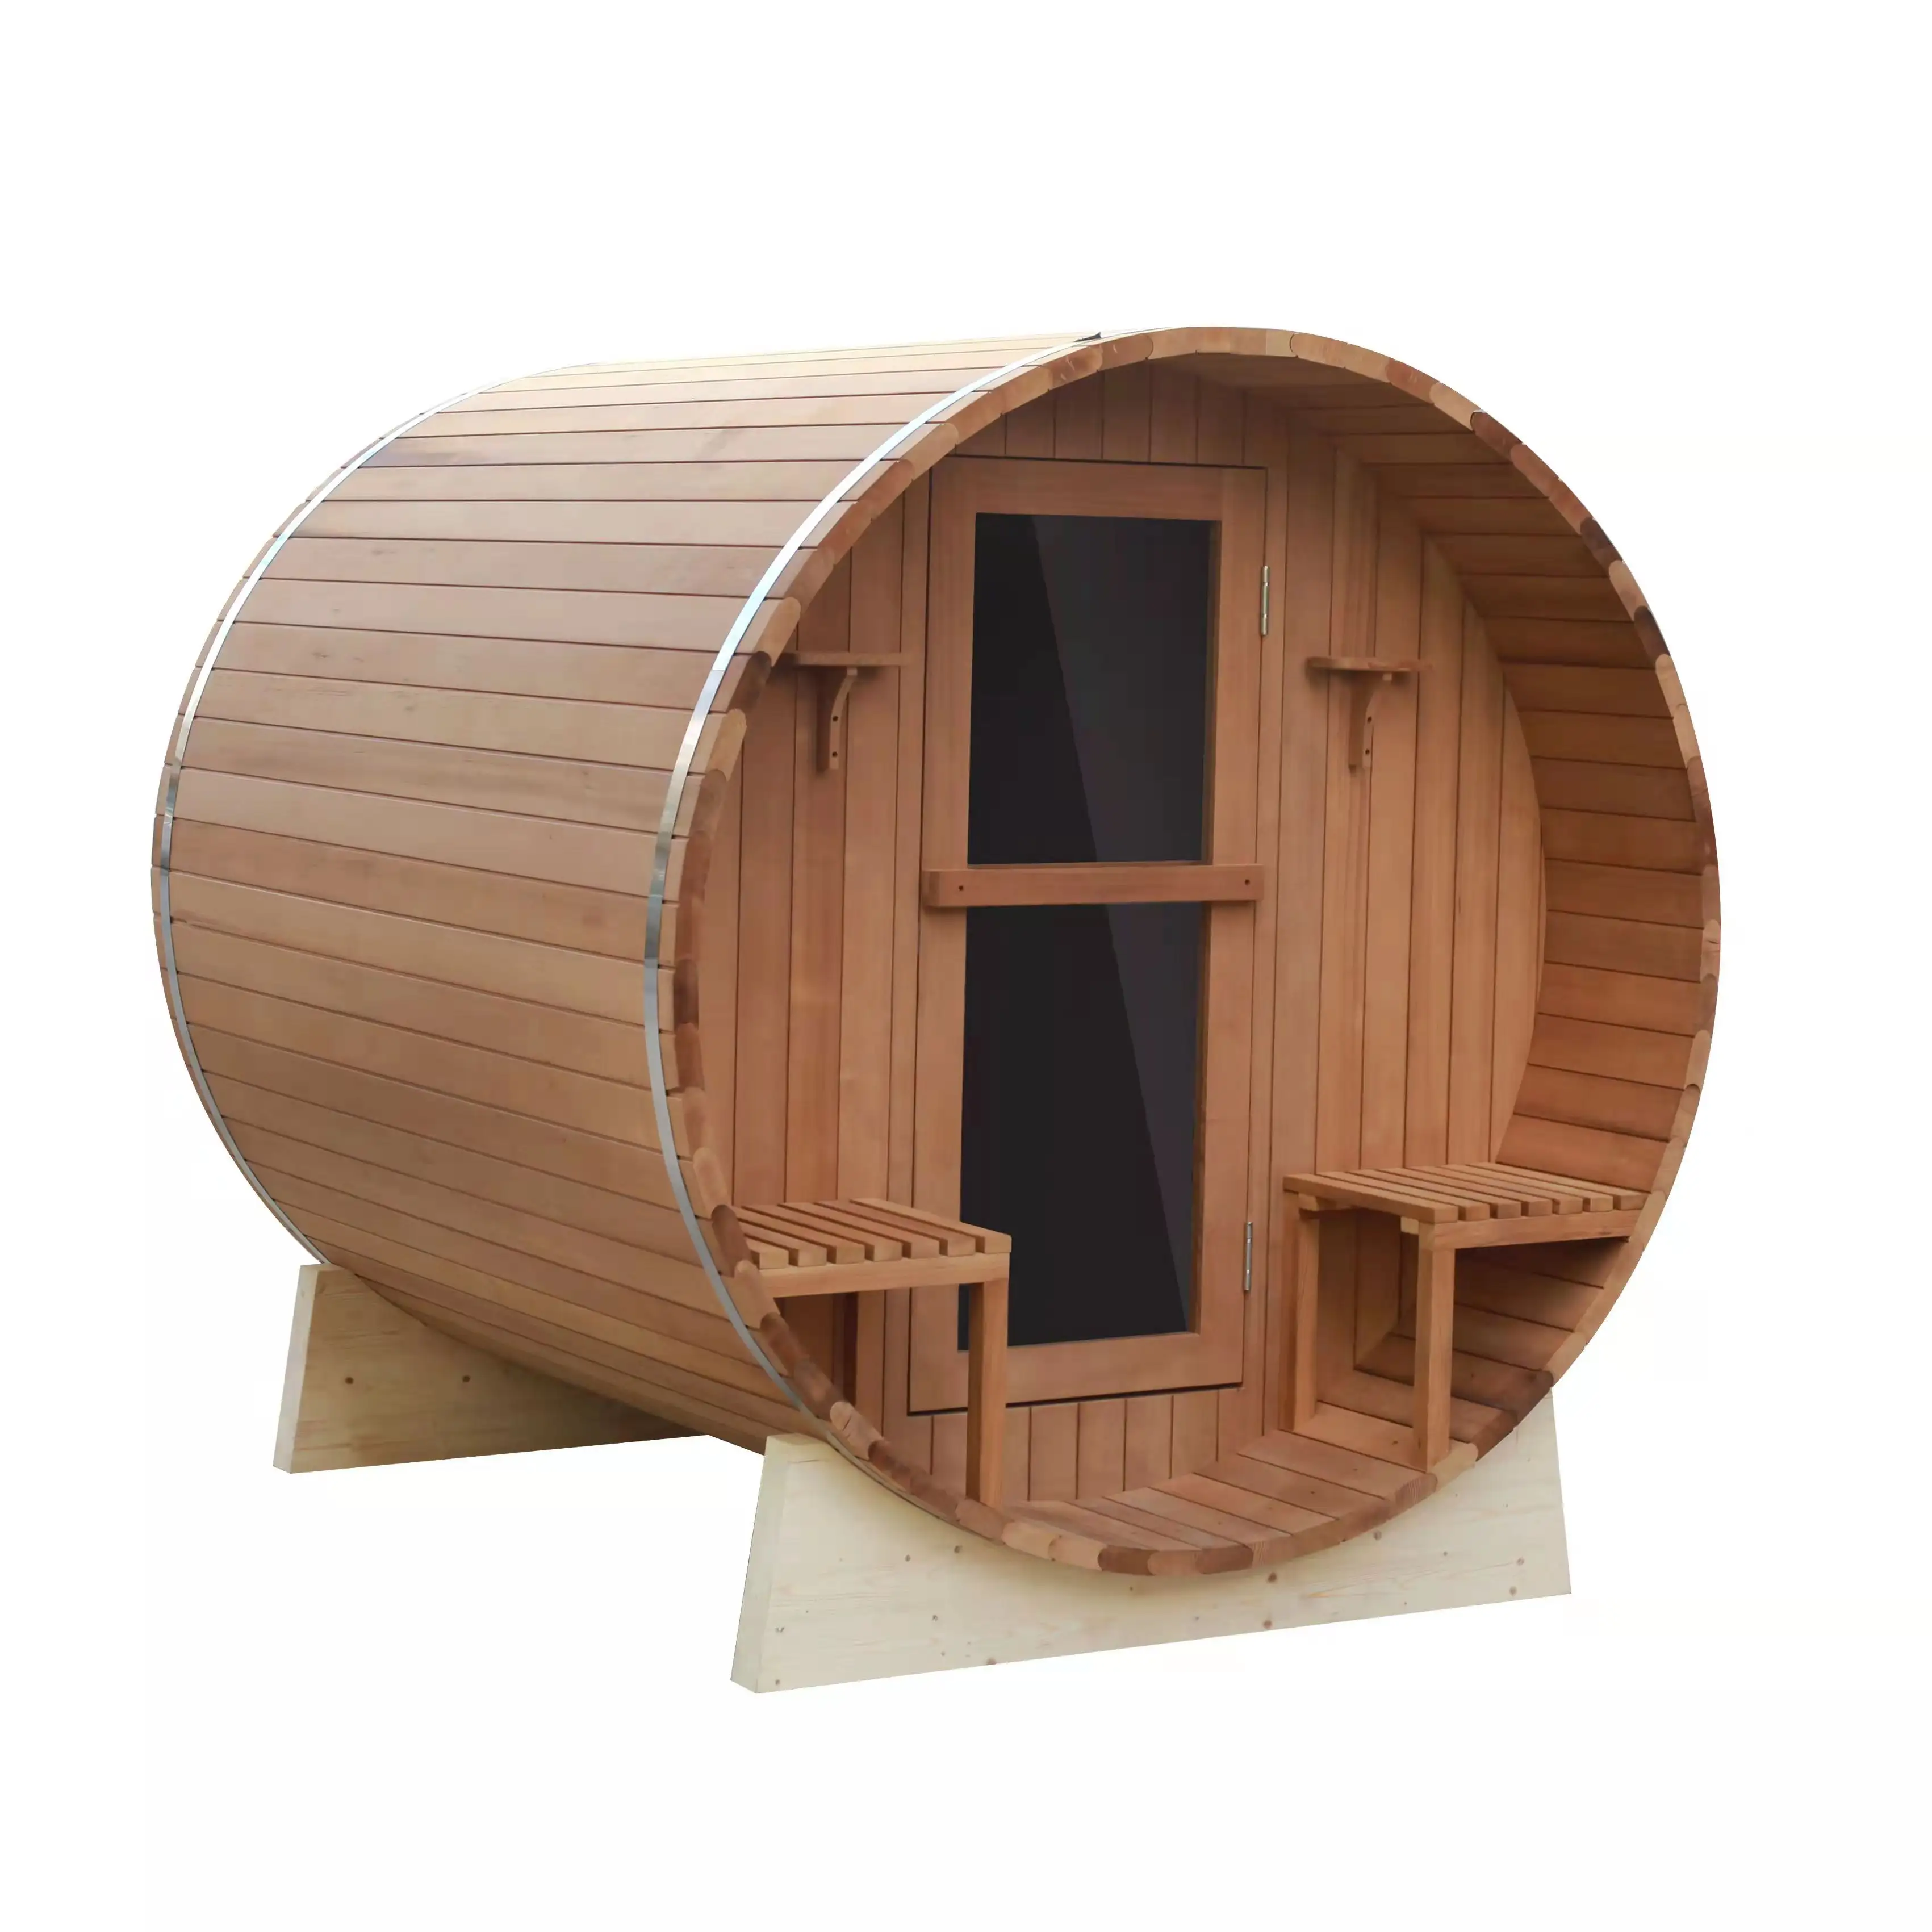 Canadian Hemlock wood Barrel Saunas For Sale Outdoor Wet Sauna Sauna Steam